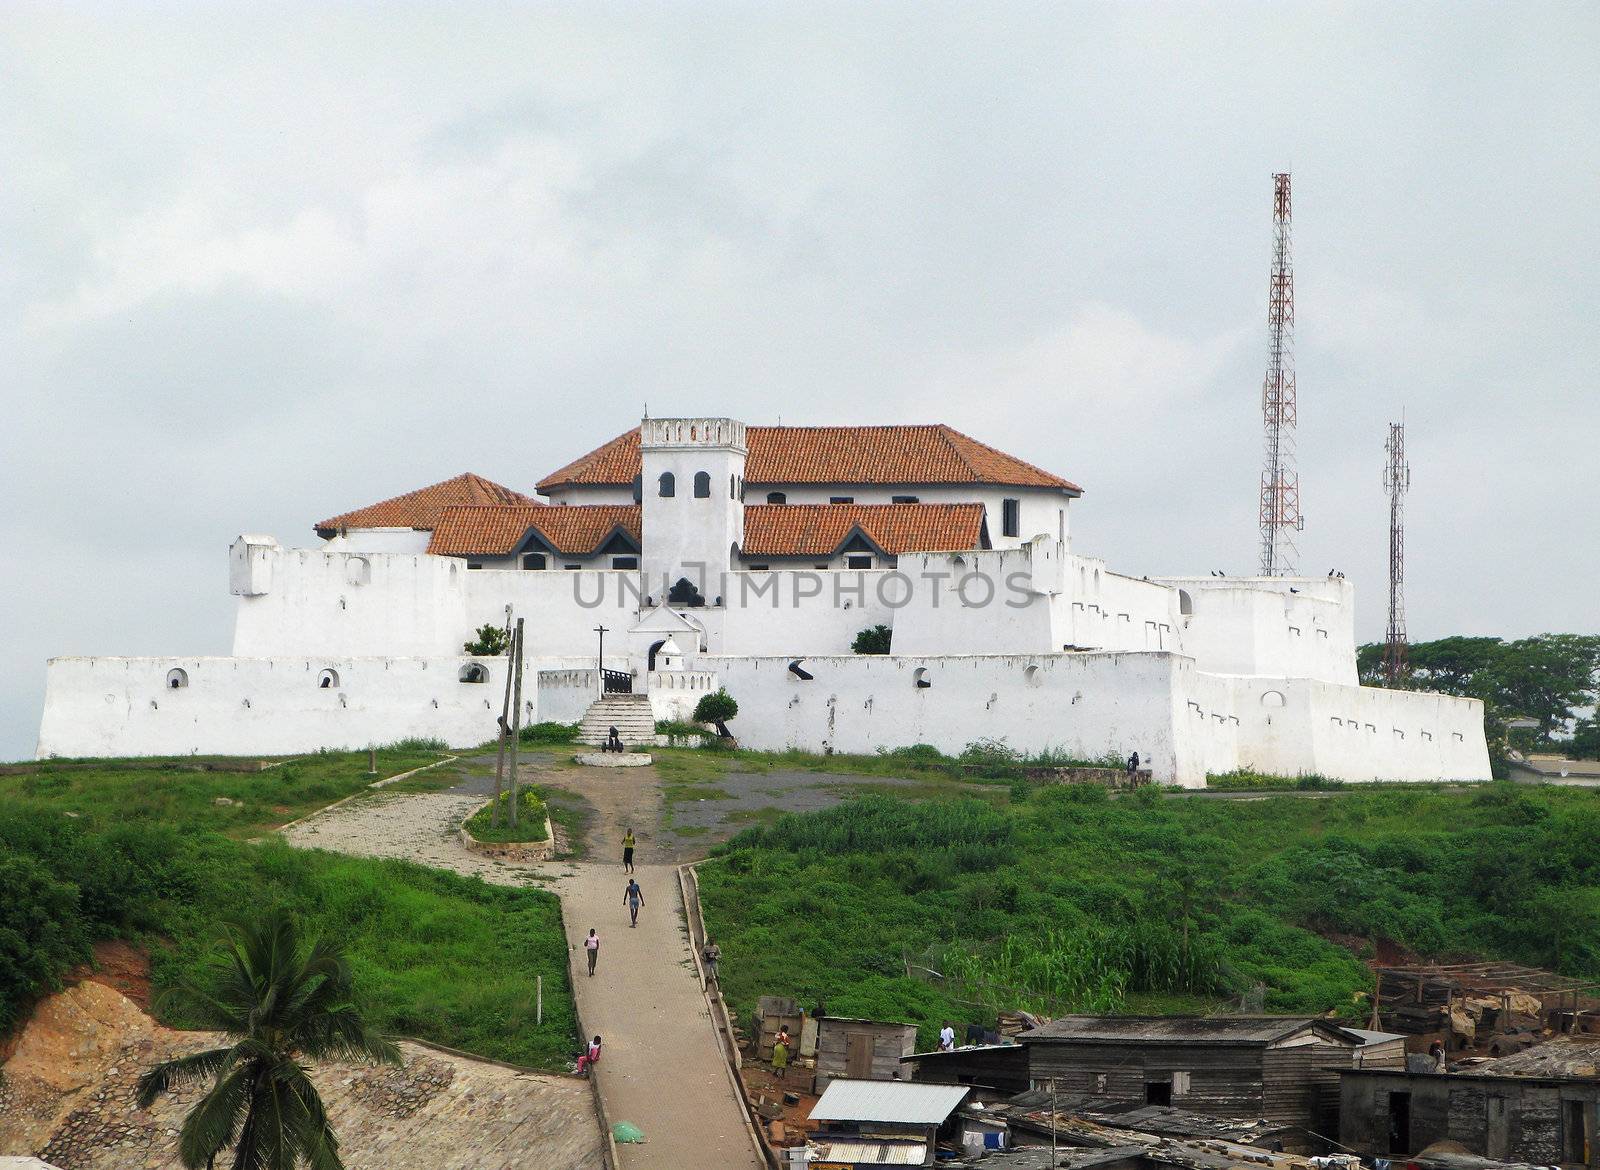 Elmina Fort near Accra in Ghana by steheap